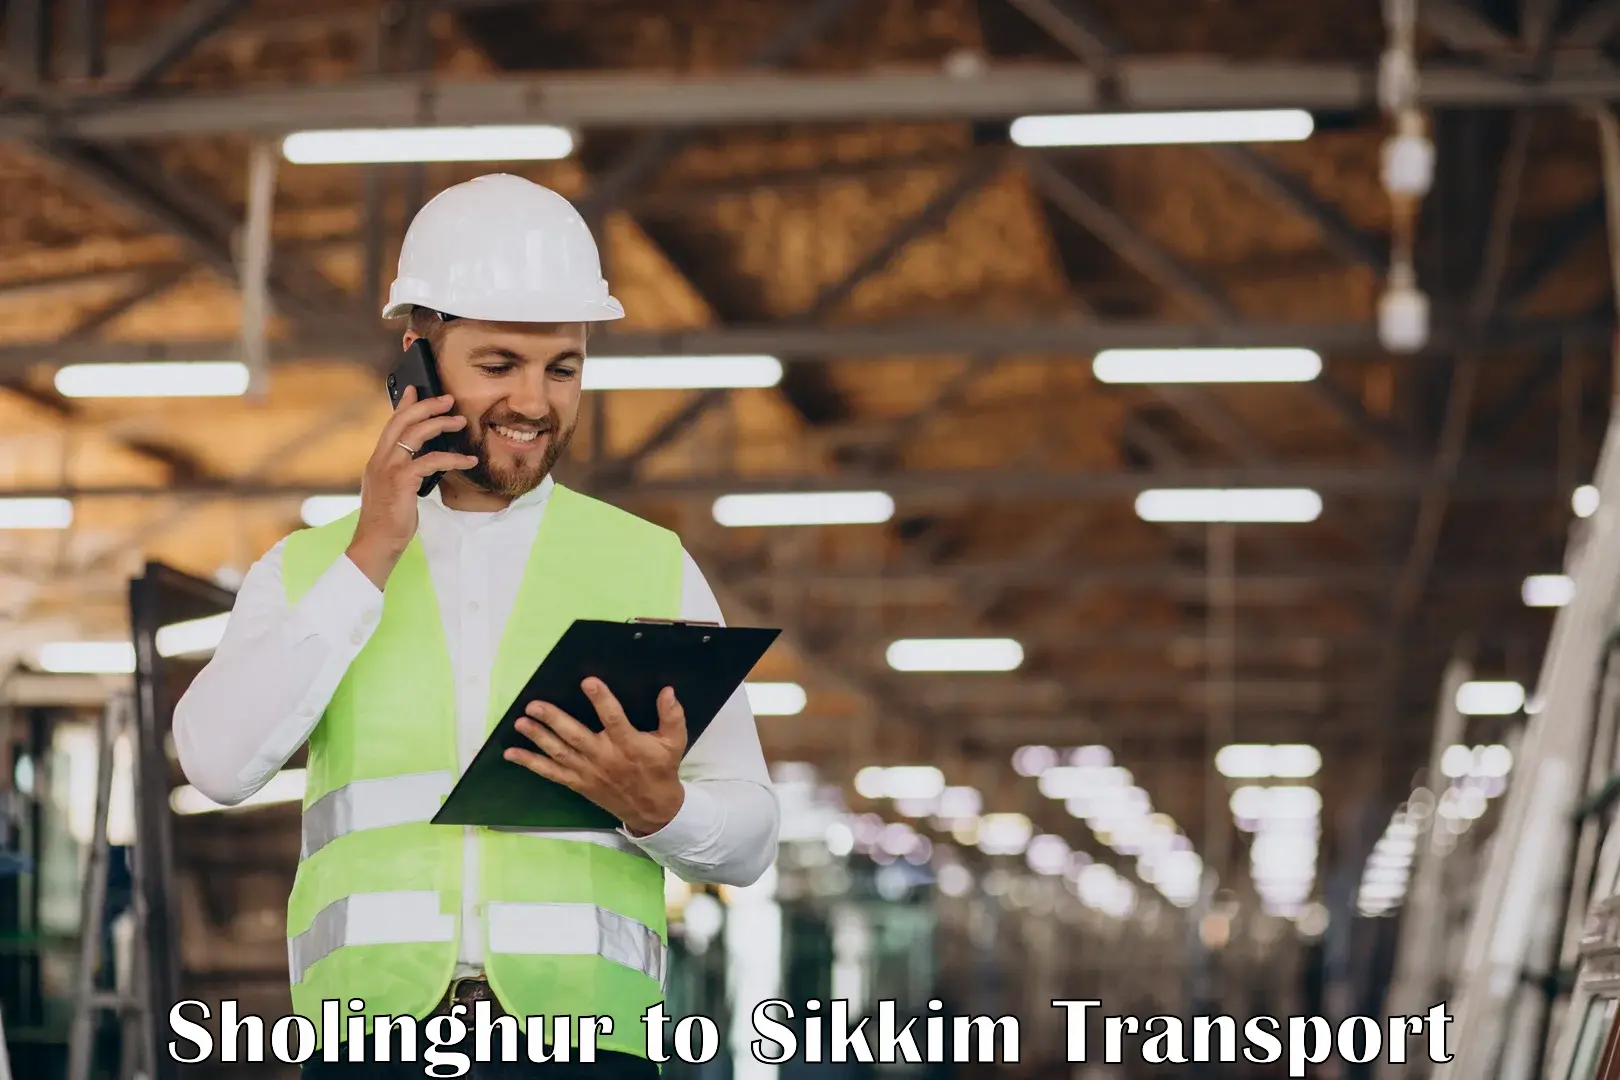 Commercial transport service Sholinghur to Sikkim